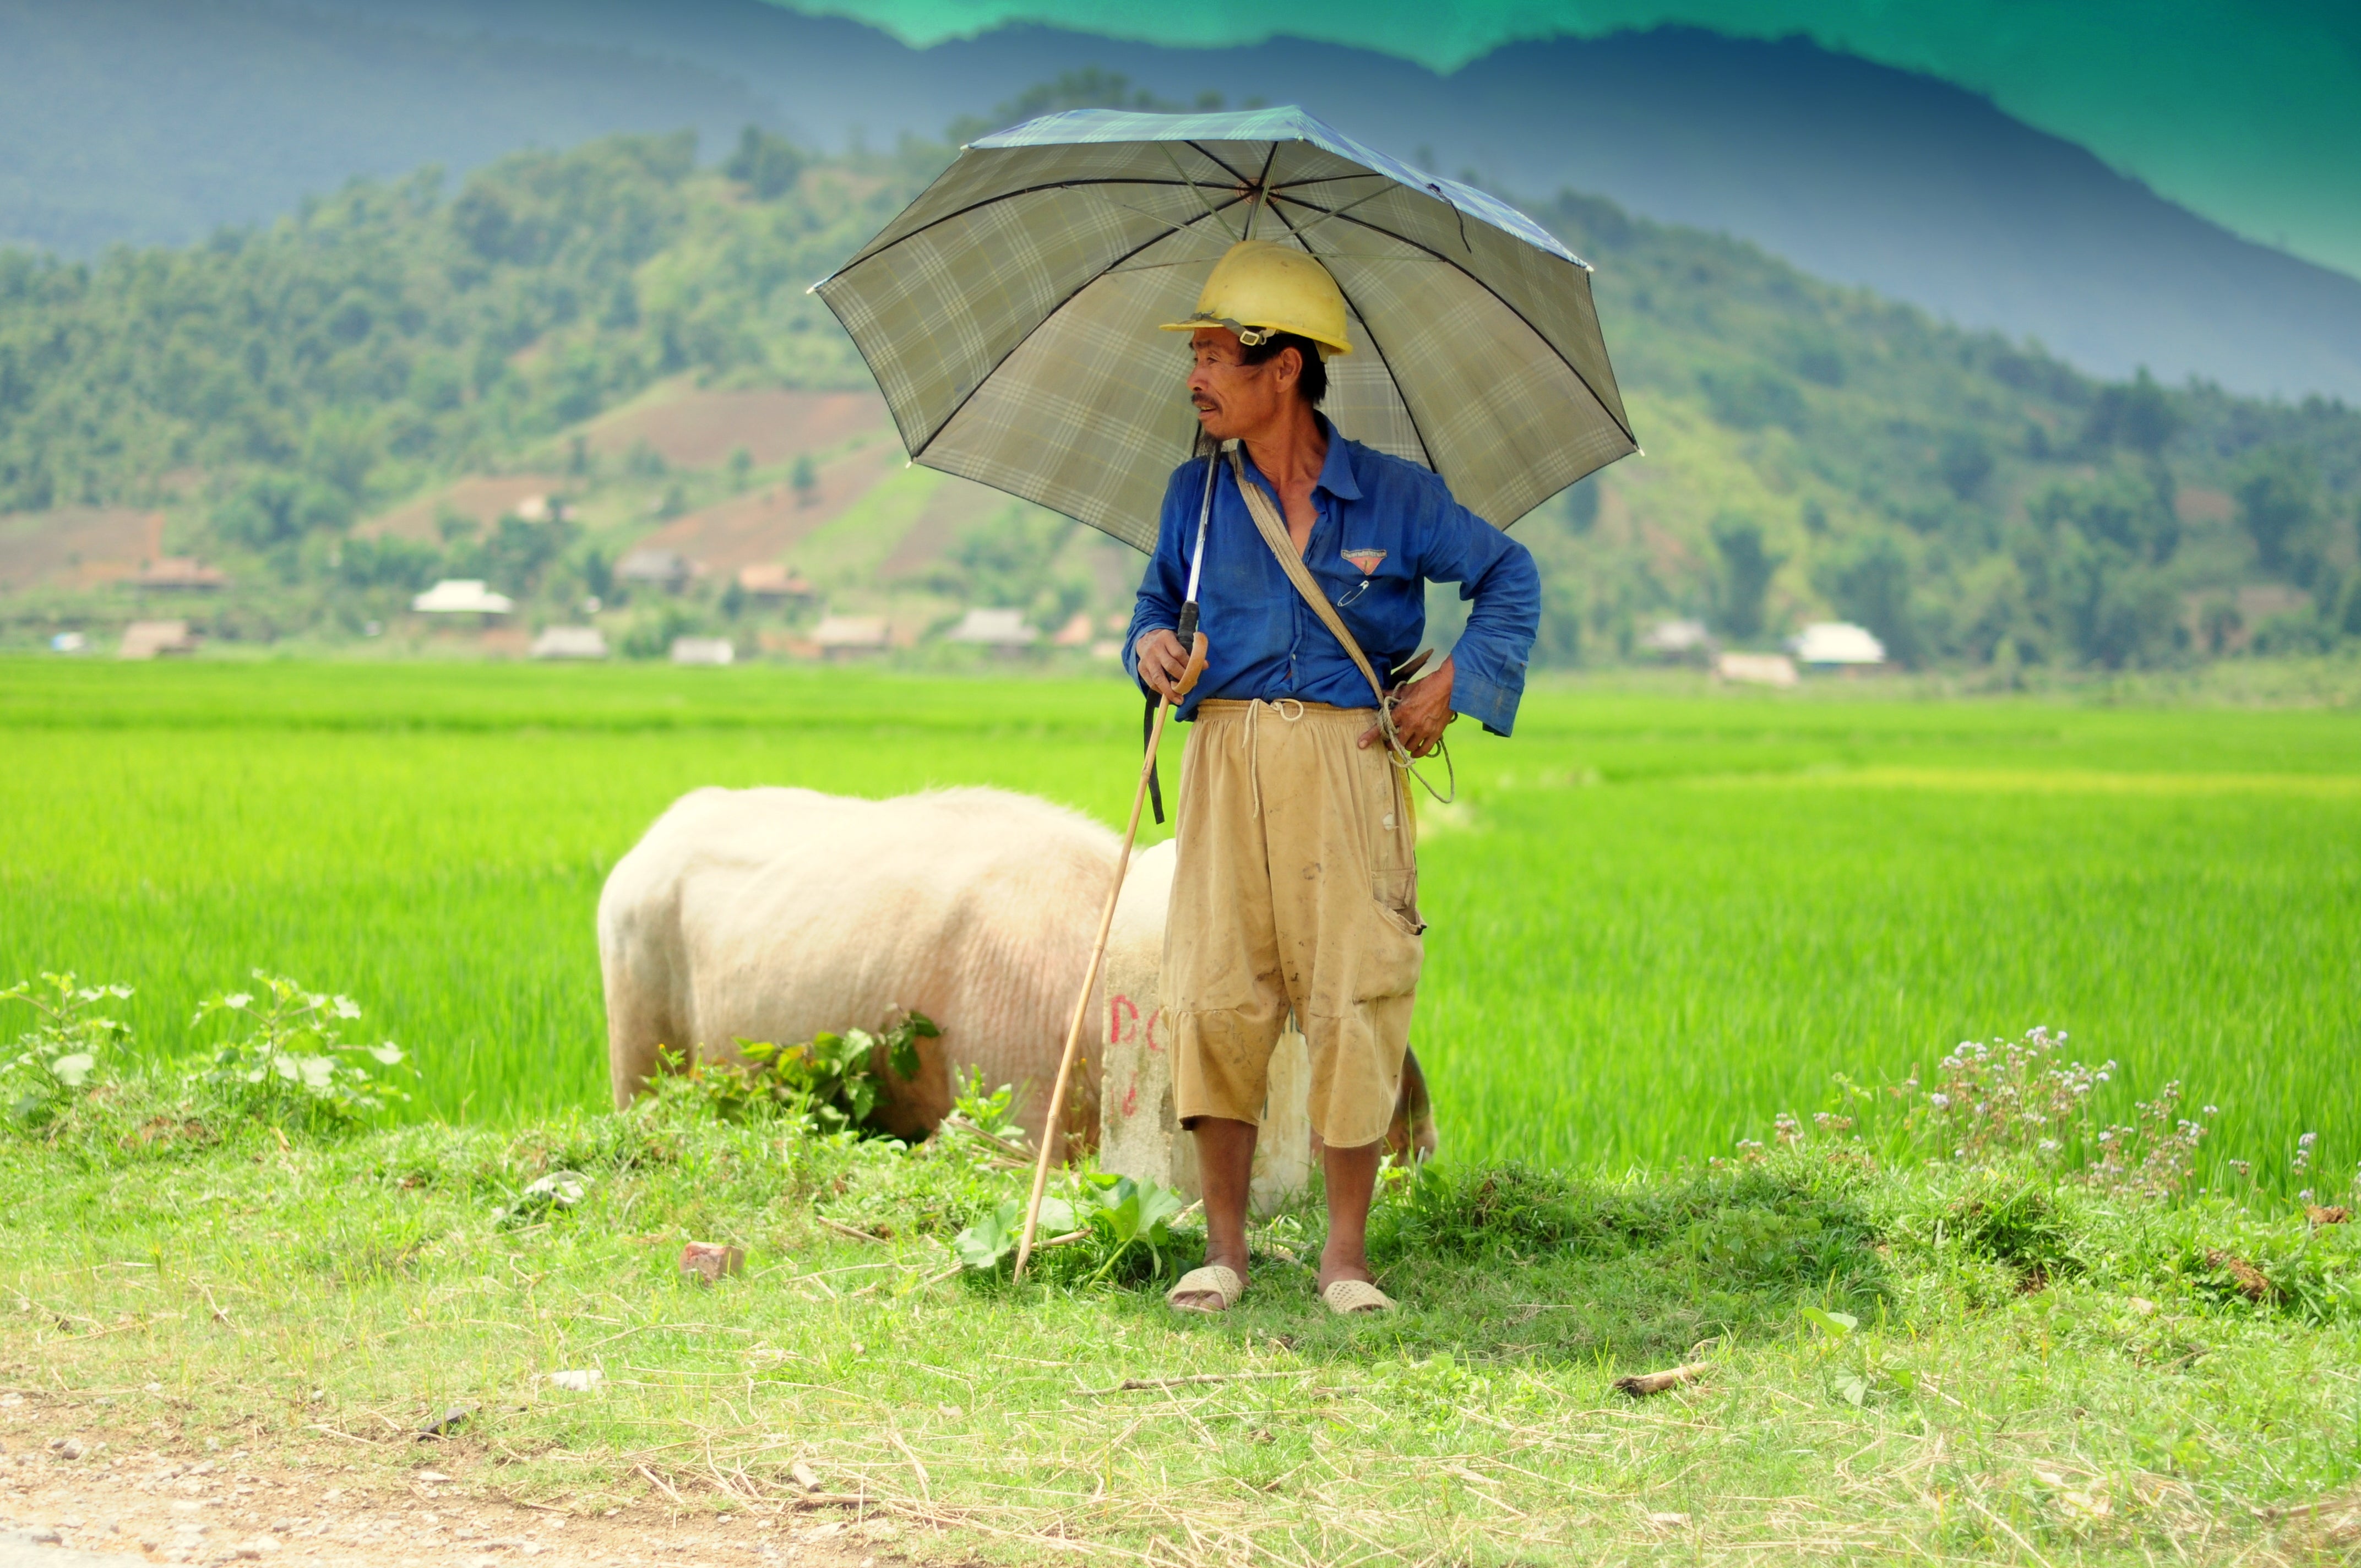 A farmer stands next to a field holding an umbrella.